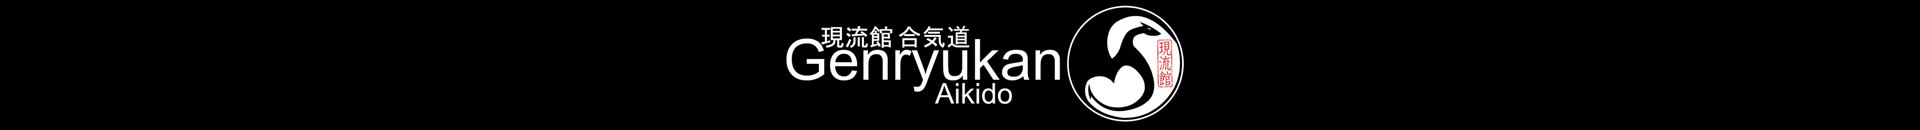 New aikido audio glossary